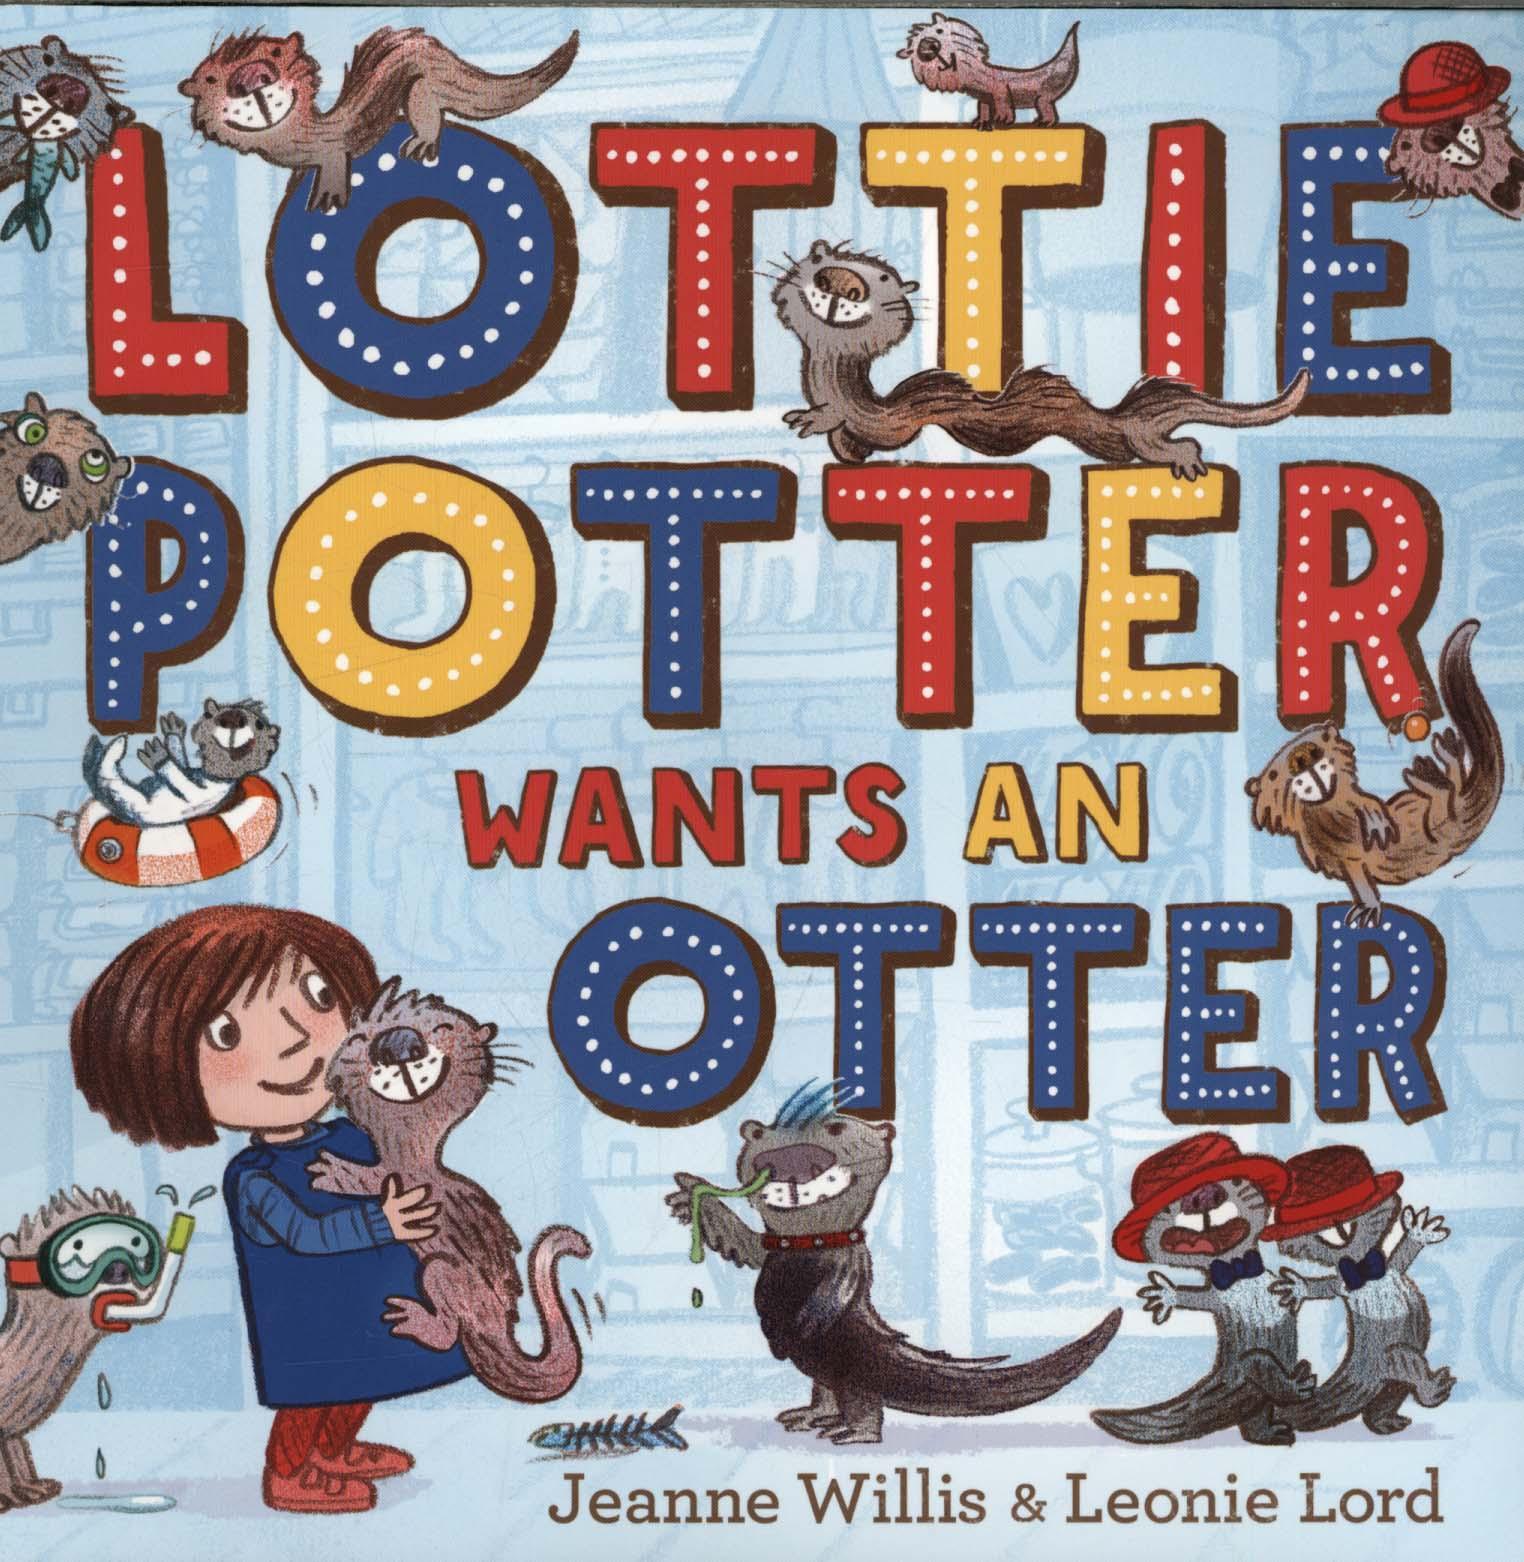 Lottie Potter Wants an Otter - Jeanne Willis